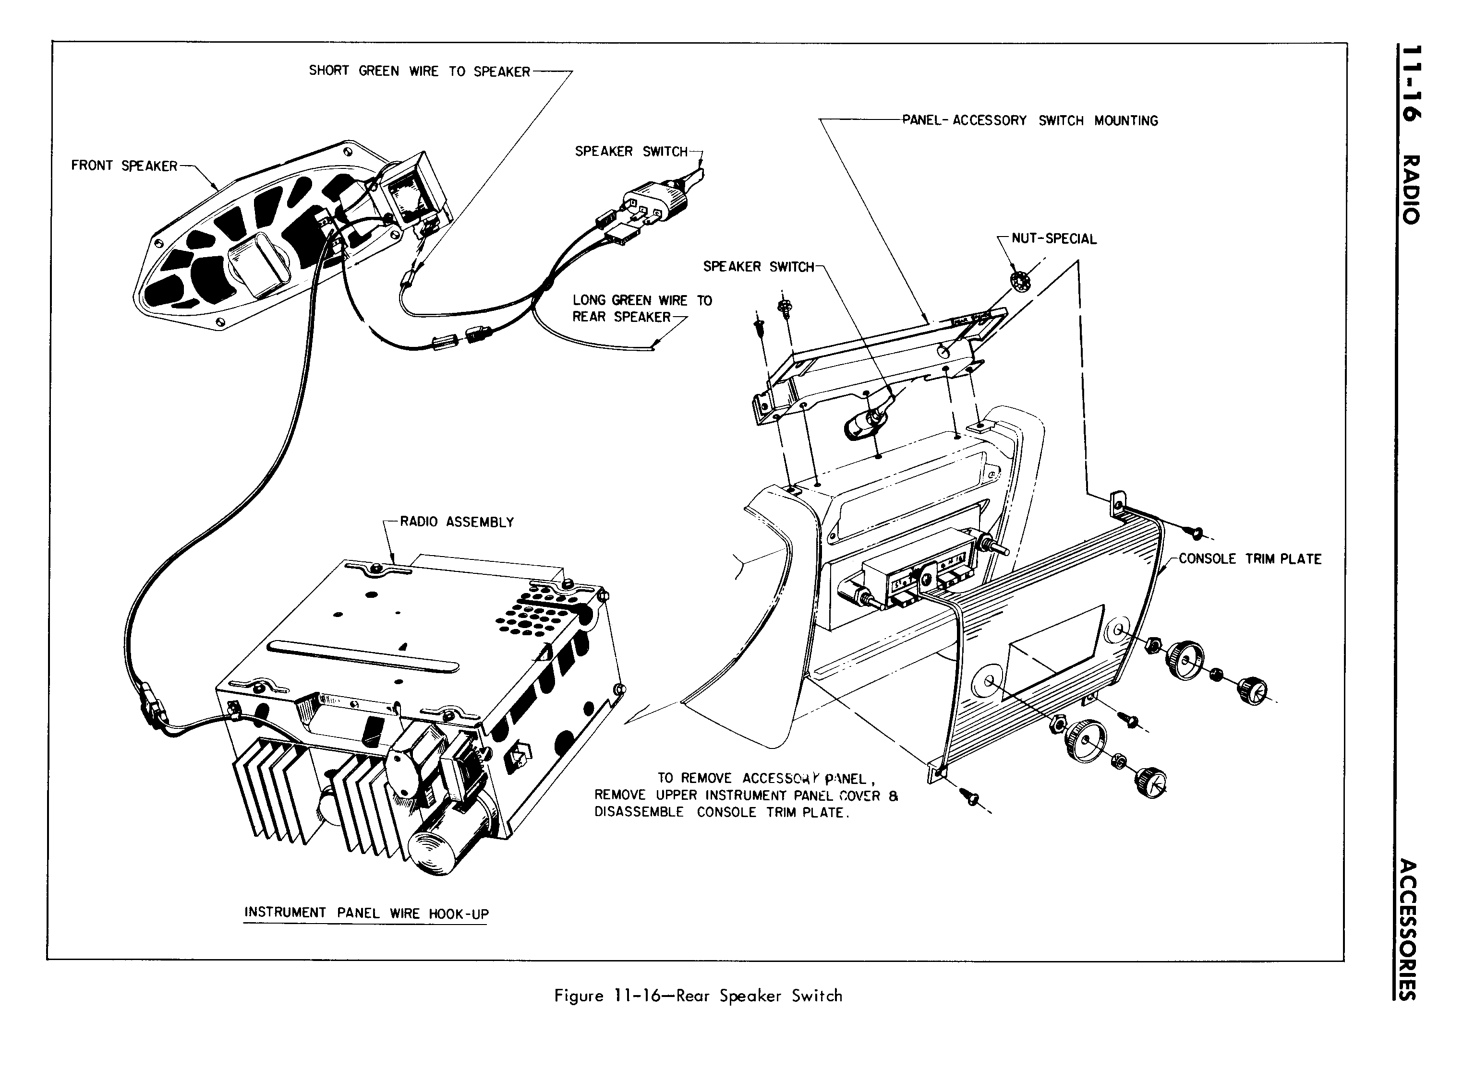 n_11 1961 Buick Shop Manual - Accessories-016-016.jpg